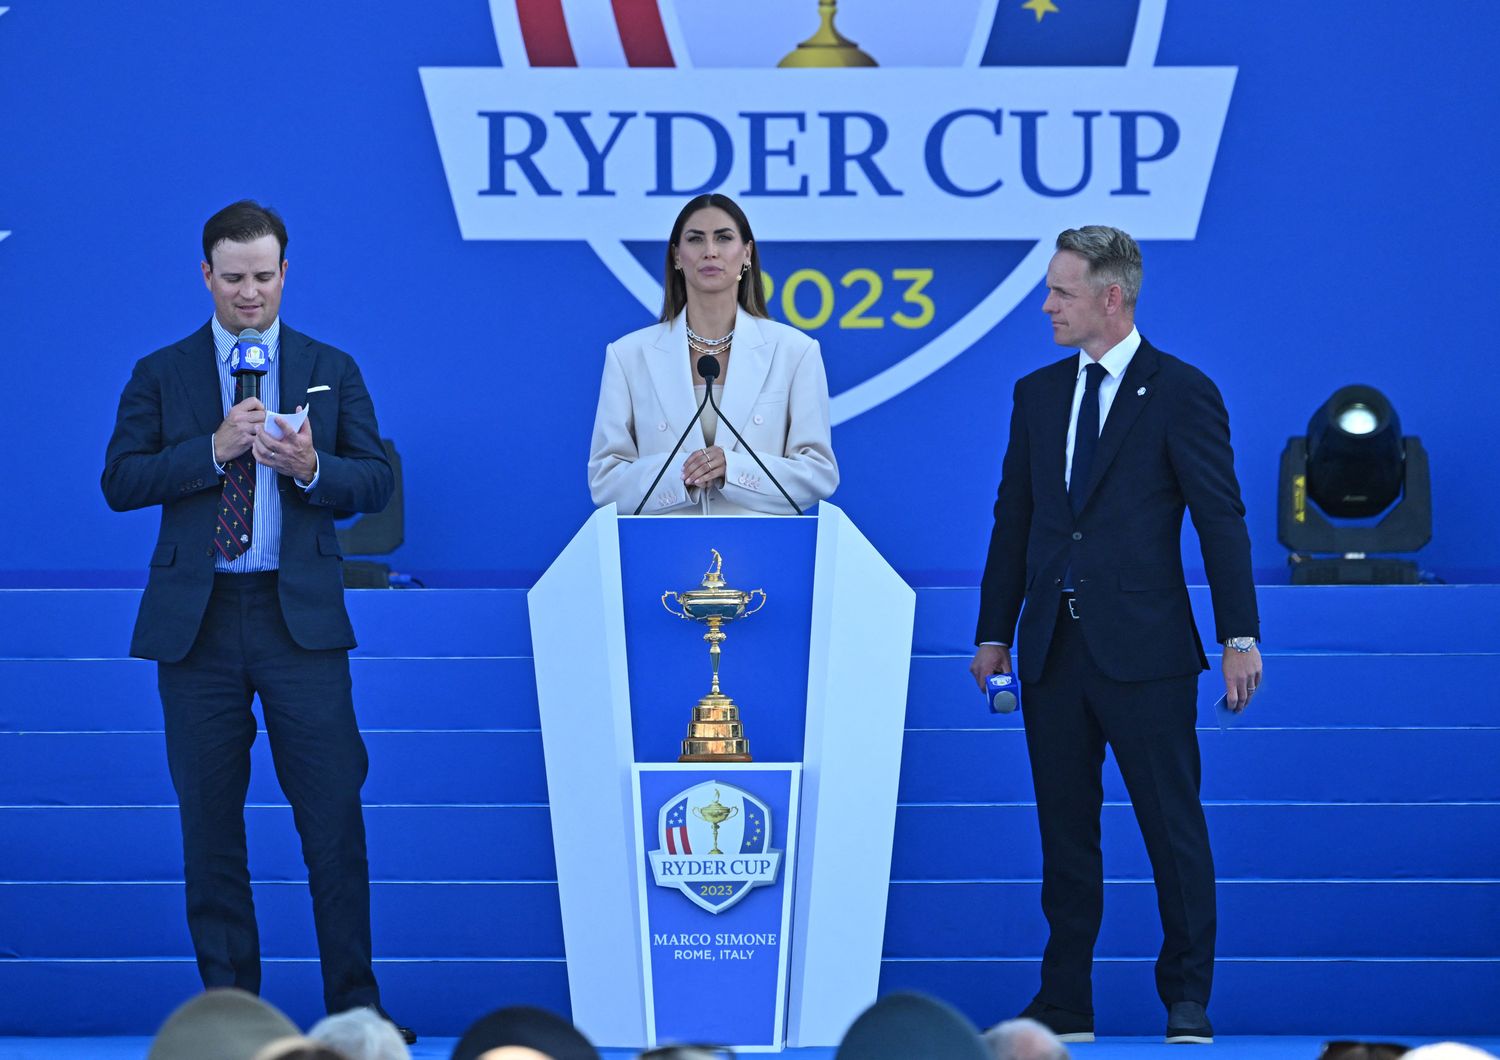 La presentazione della Ryder Cup